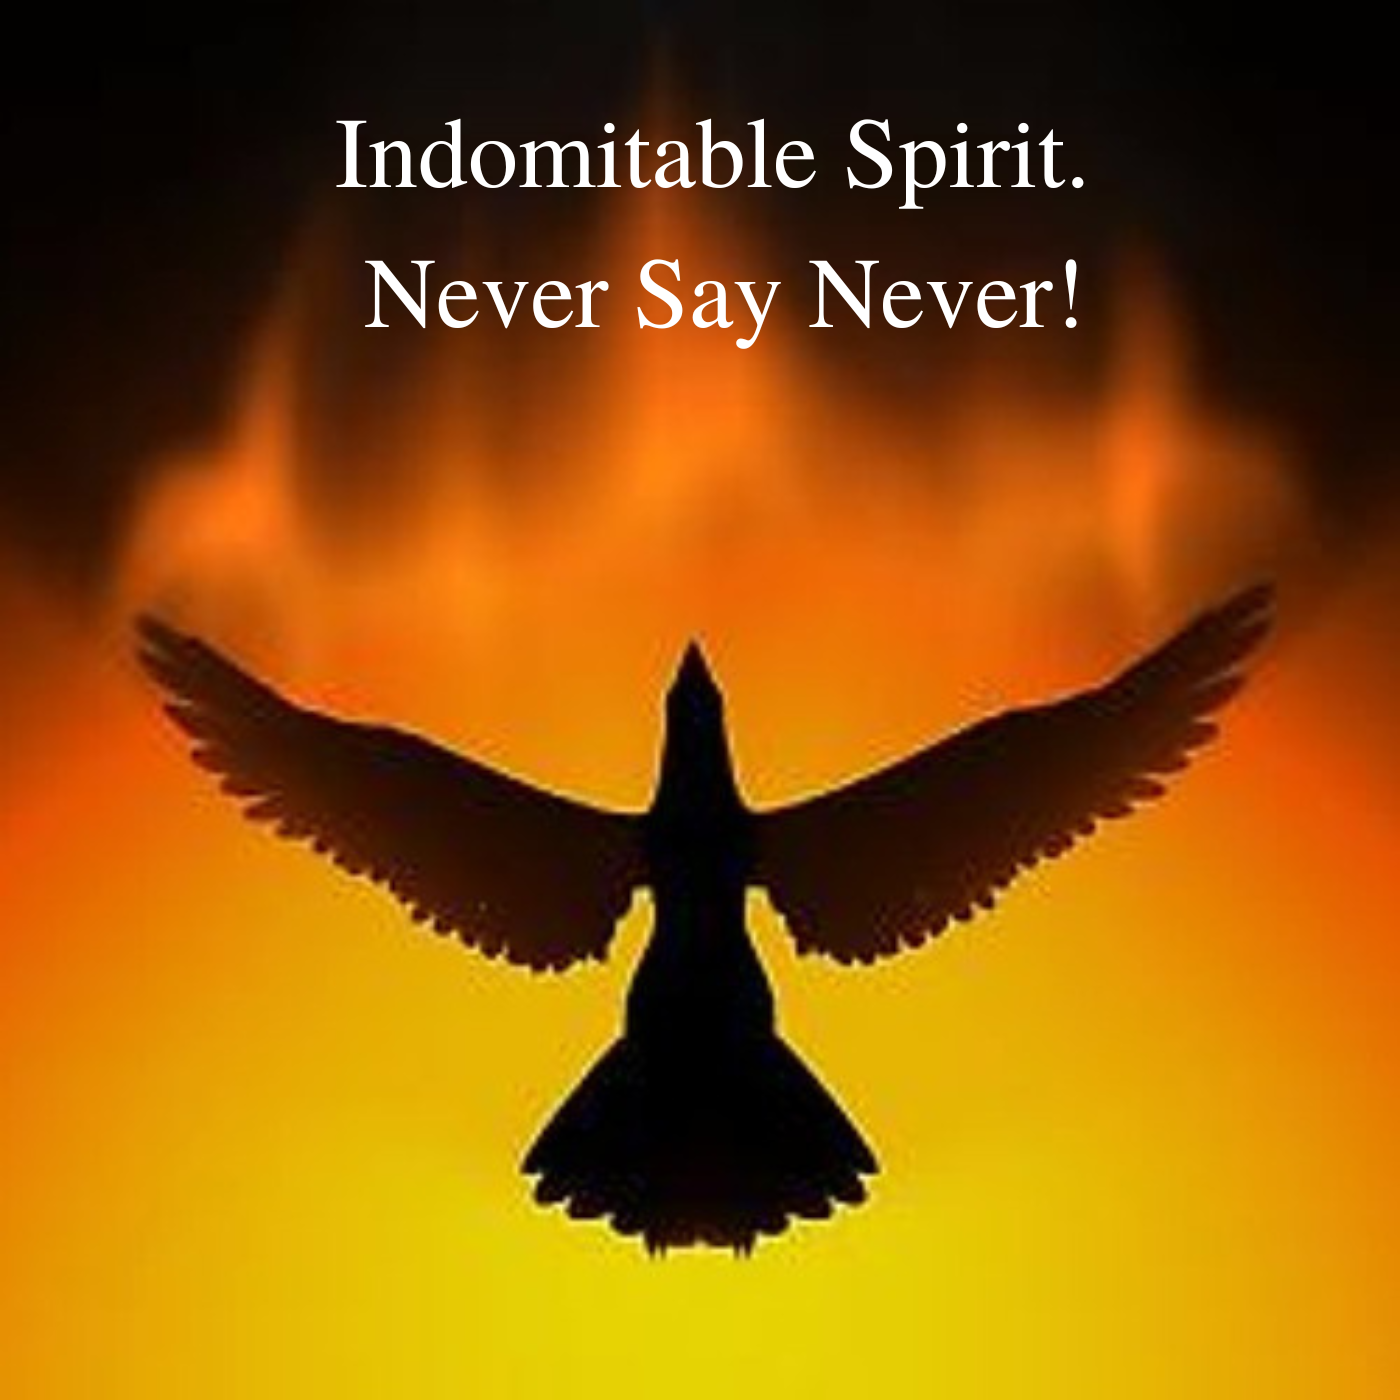 Indomitable Spirit. Never Say Never!